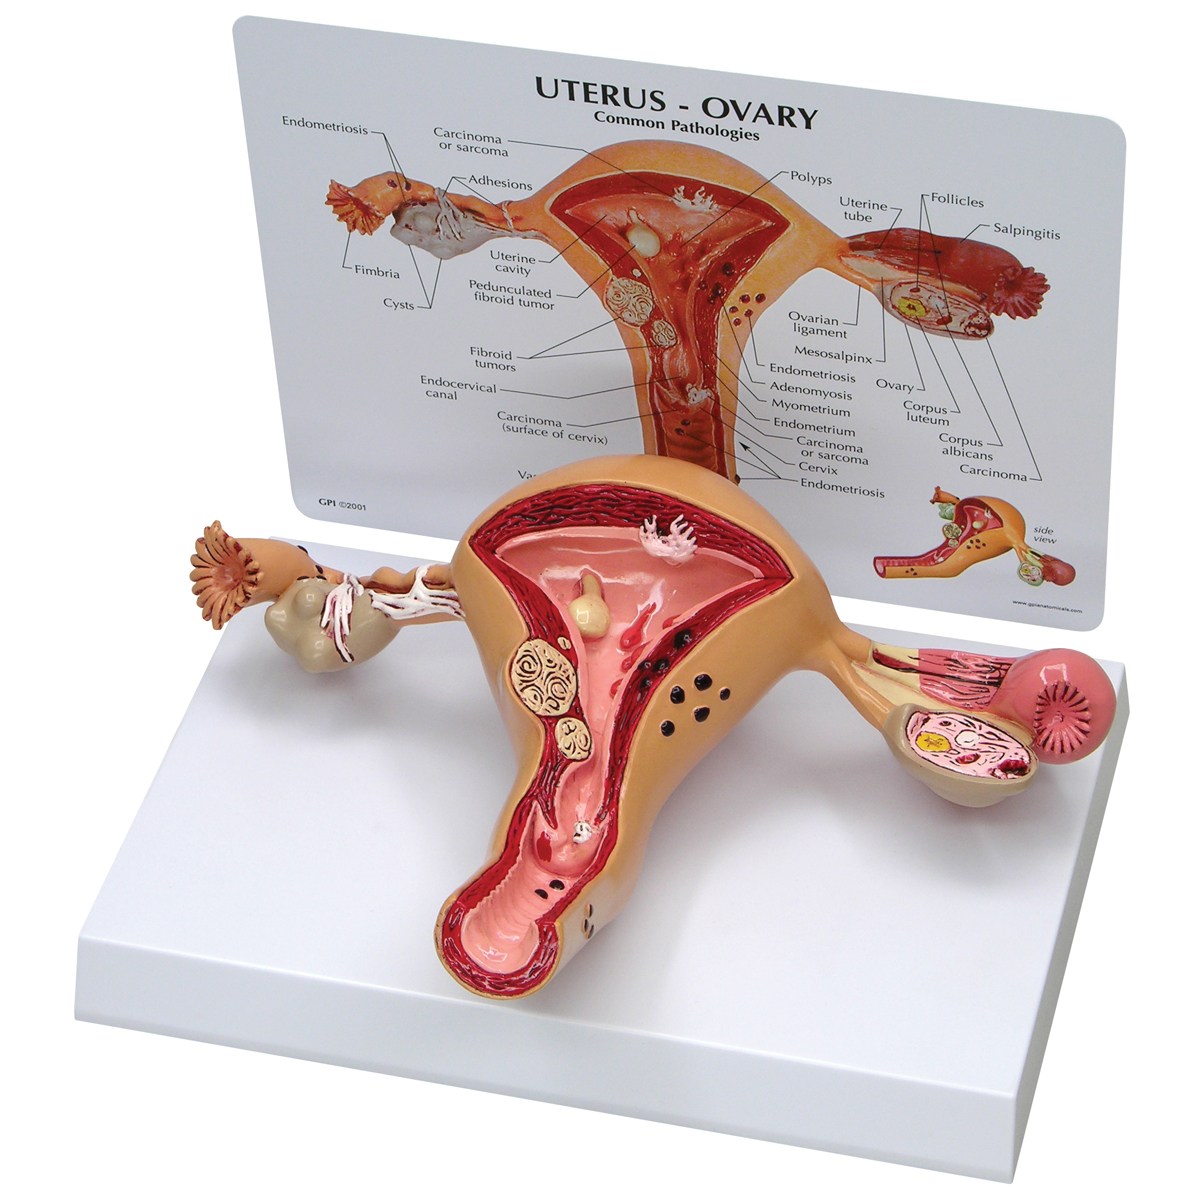 Gebärmutter-Eierstockmodell, Bestellnummer 1019594, W33352, 3480, GPI Anatomicals